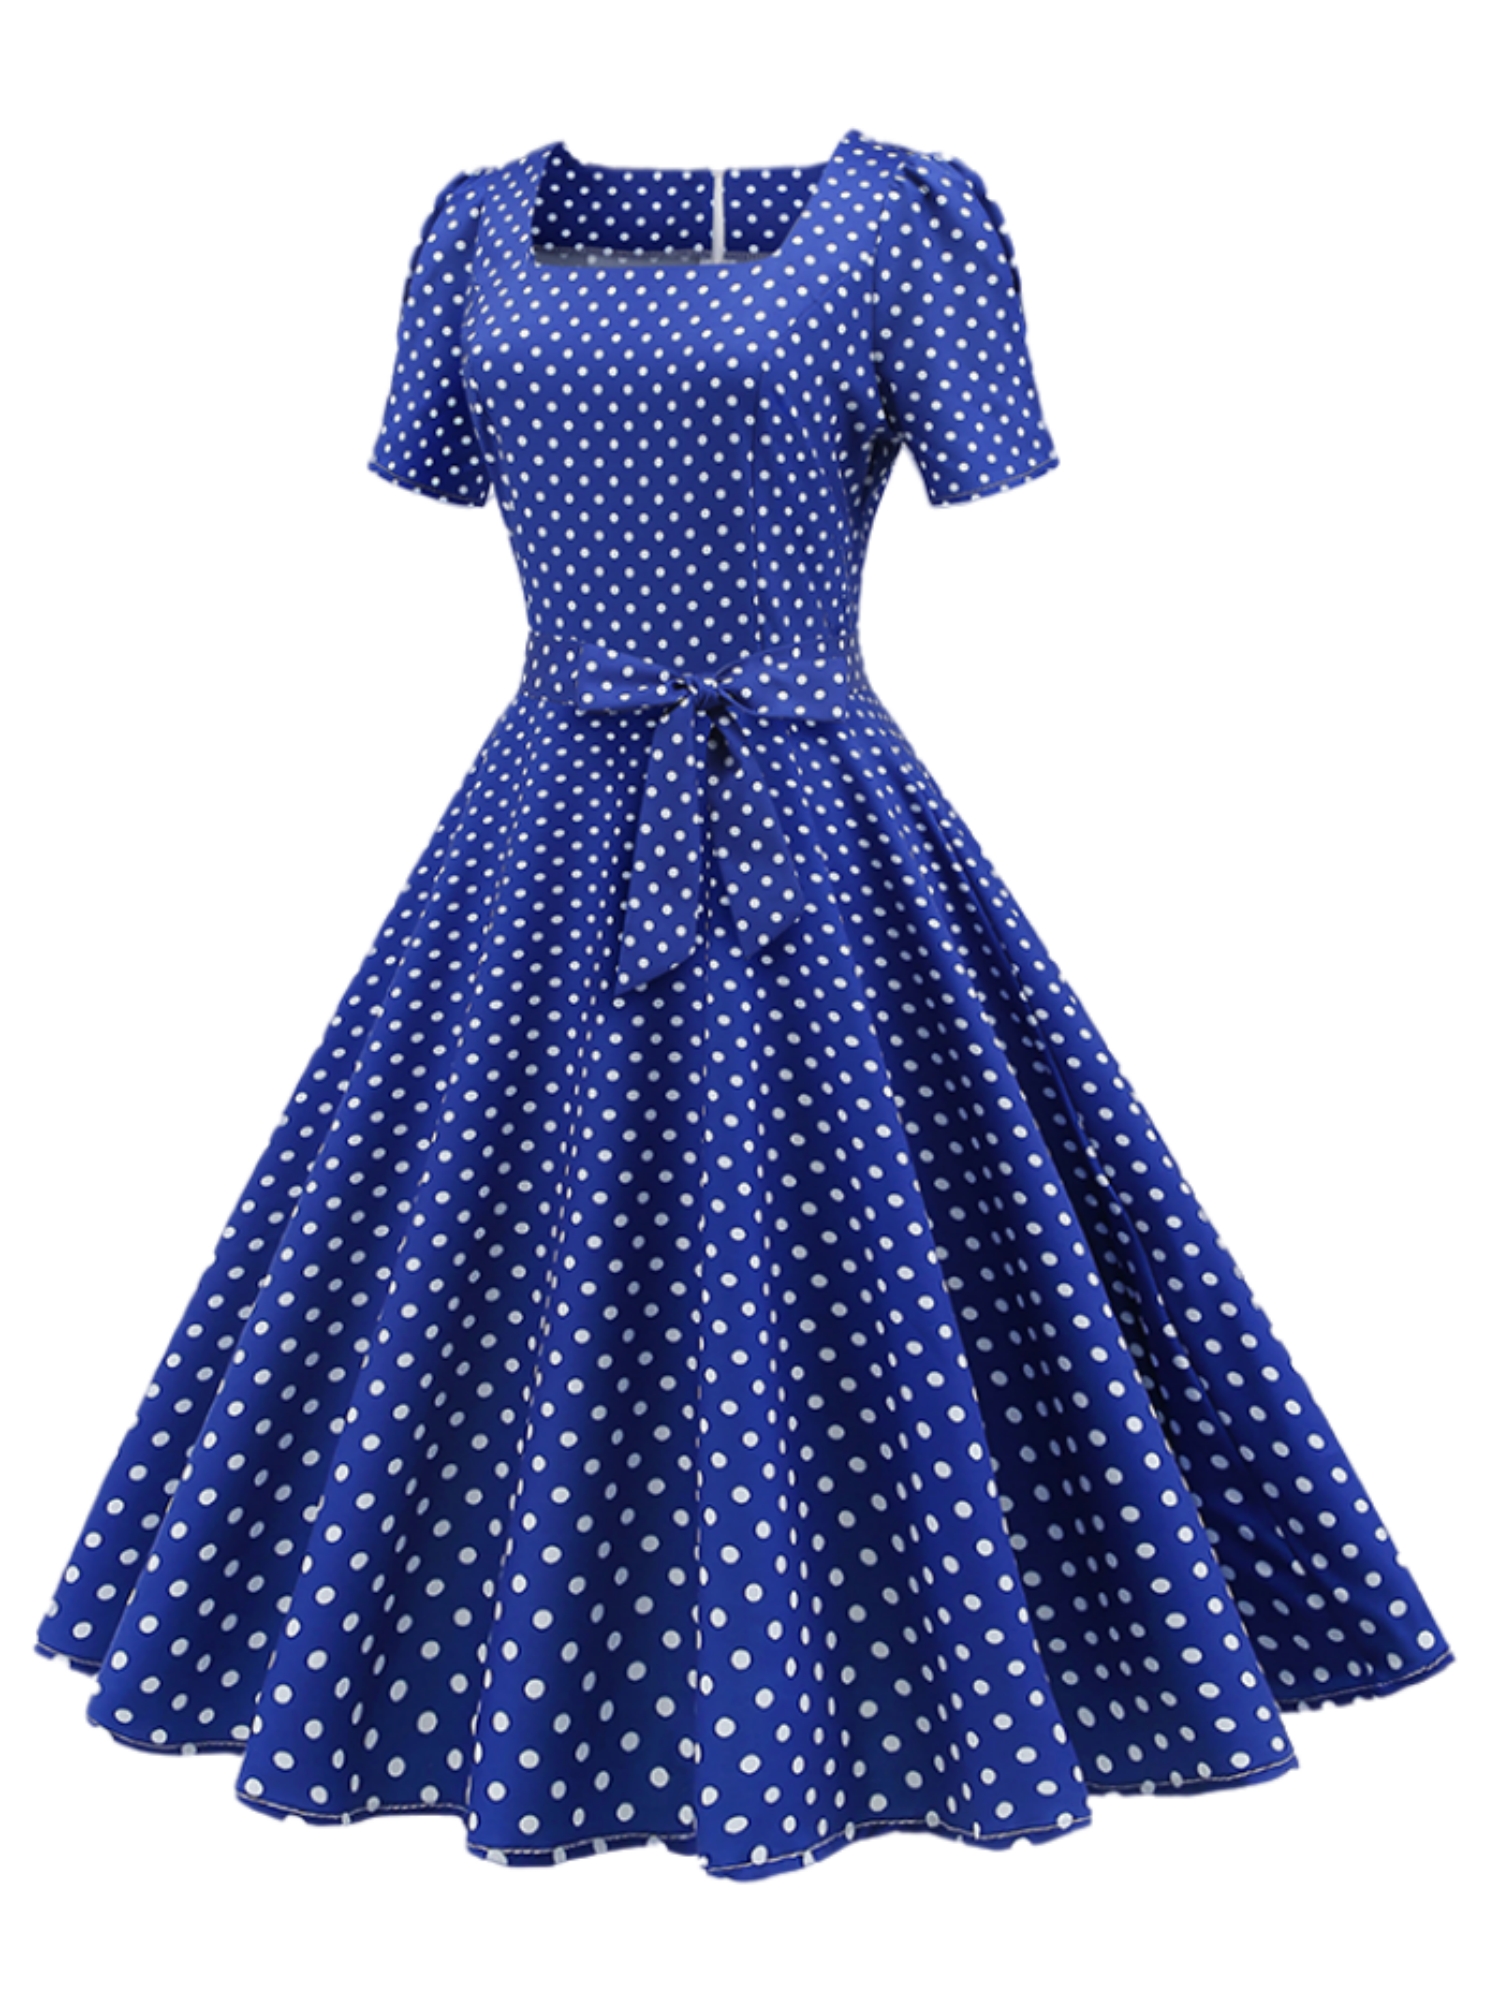 Polka Dot Bow Front Dress, Vintage Elegant Square Neck Short Sleeve ...